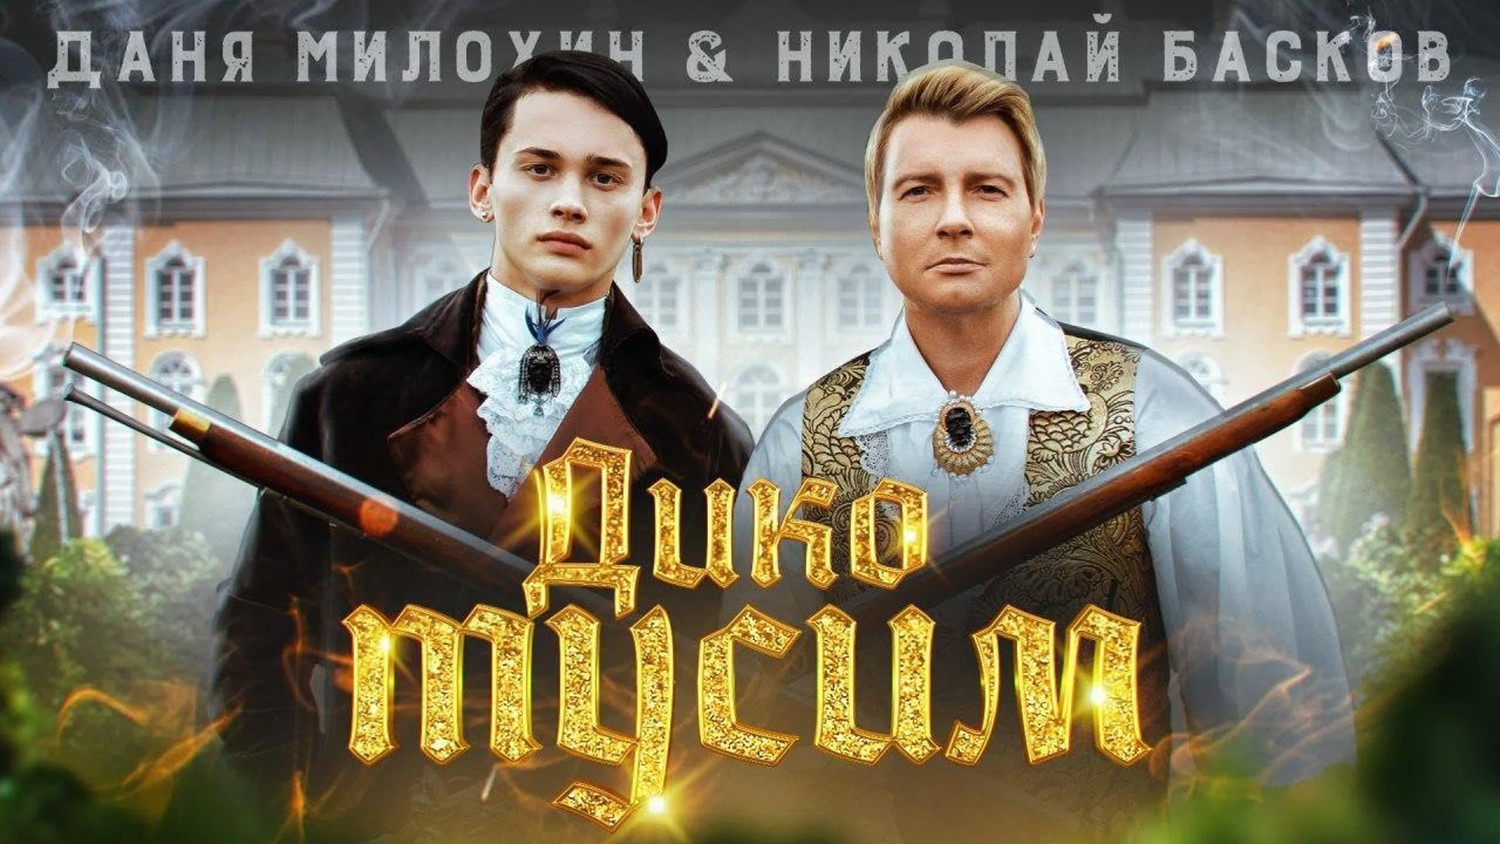 Даня Милохин отказался выпускать трек, посвященный Николаю Баскову